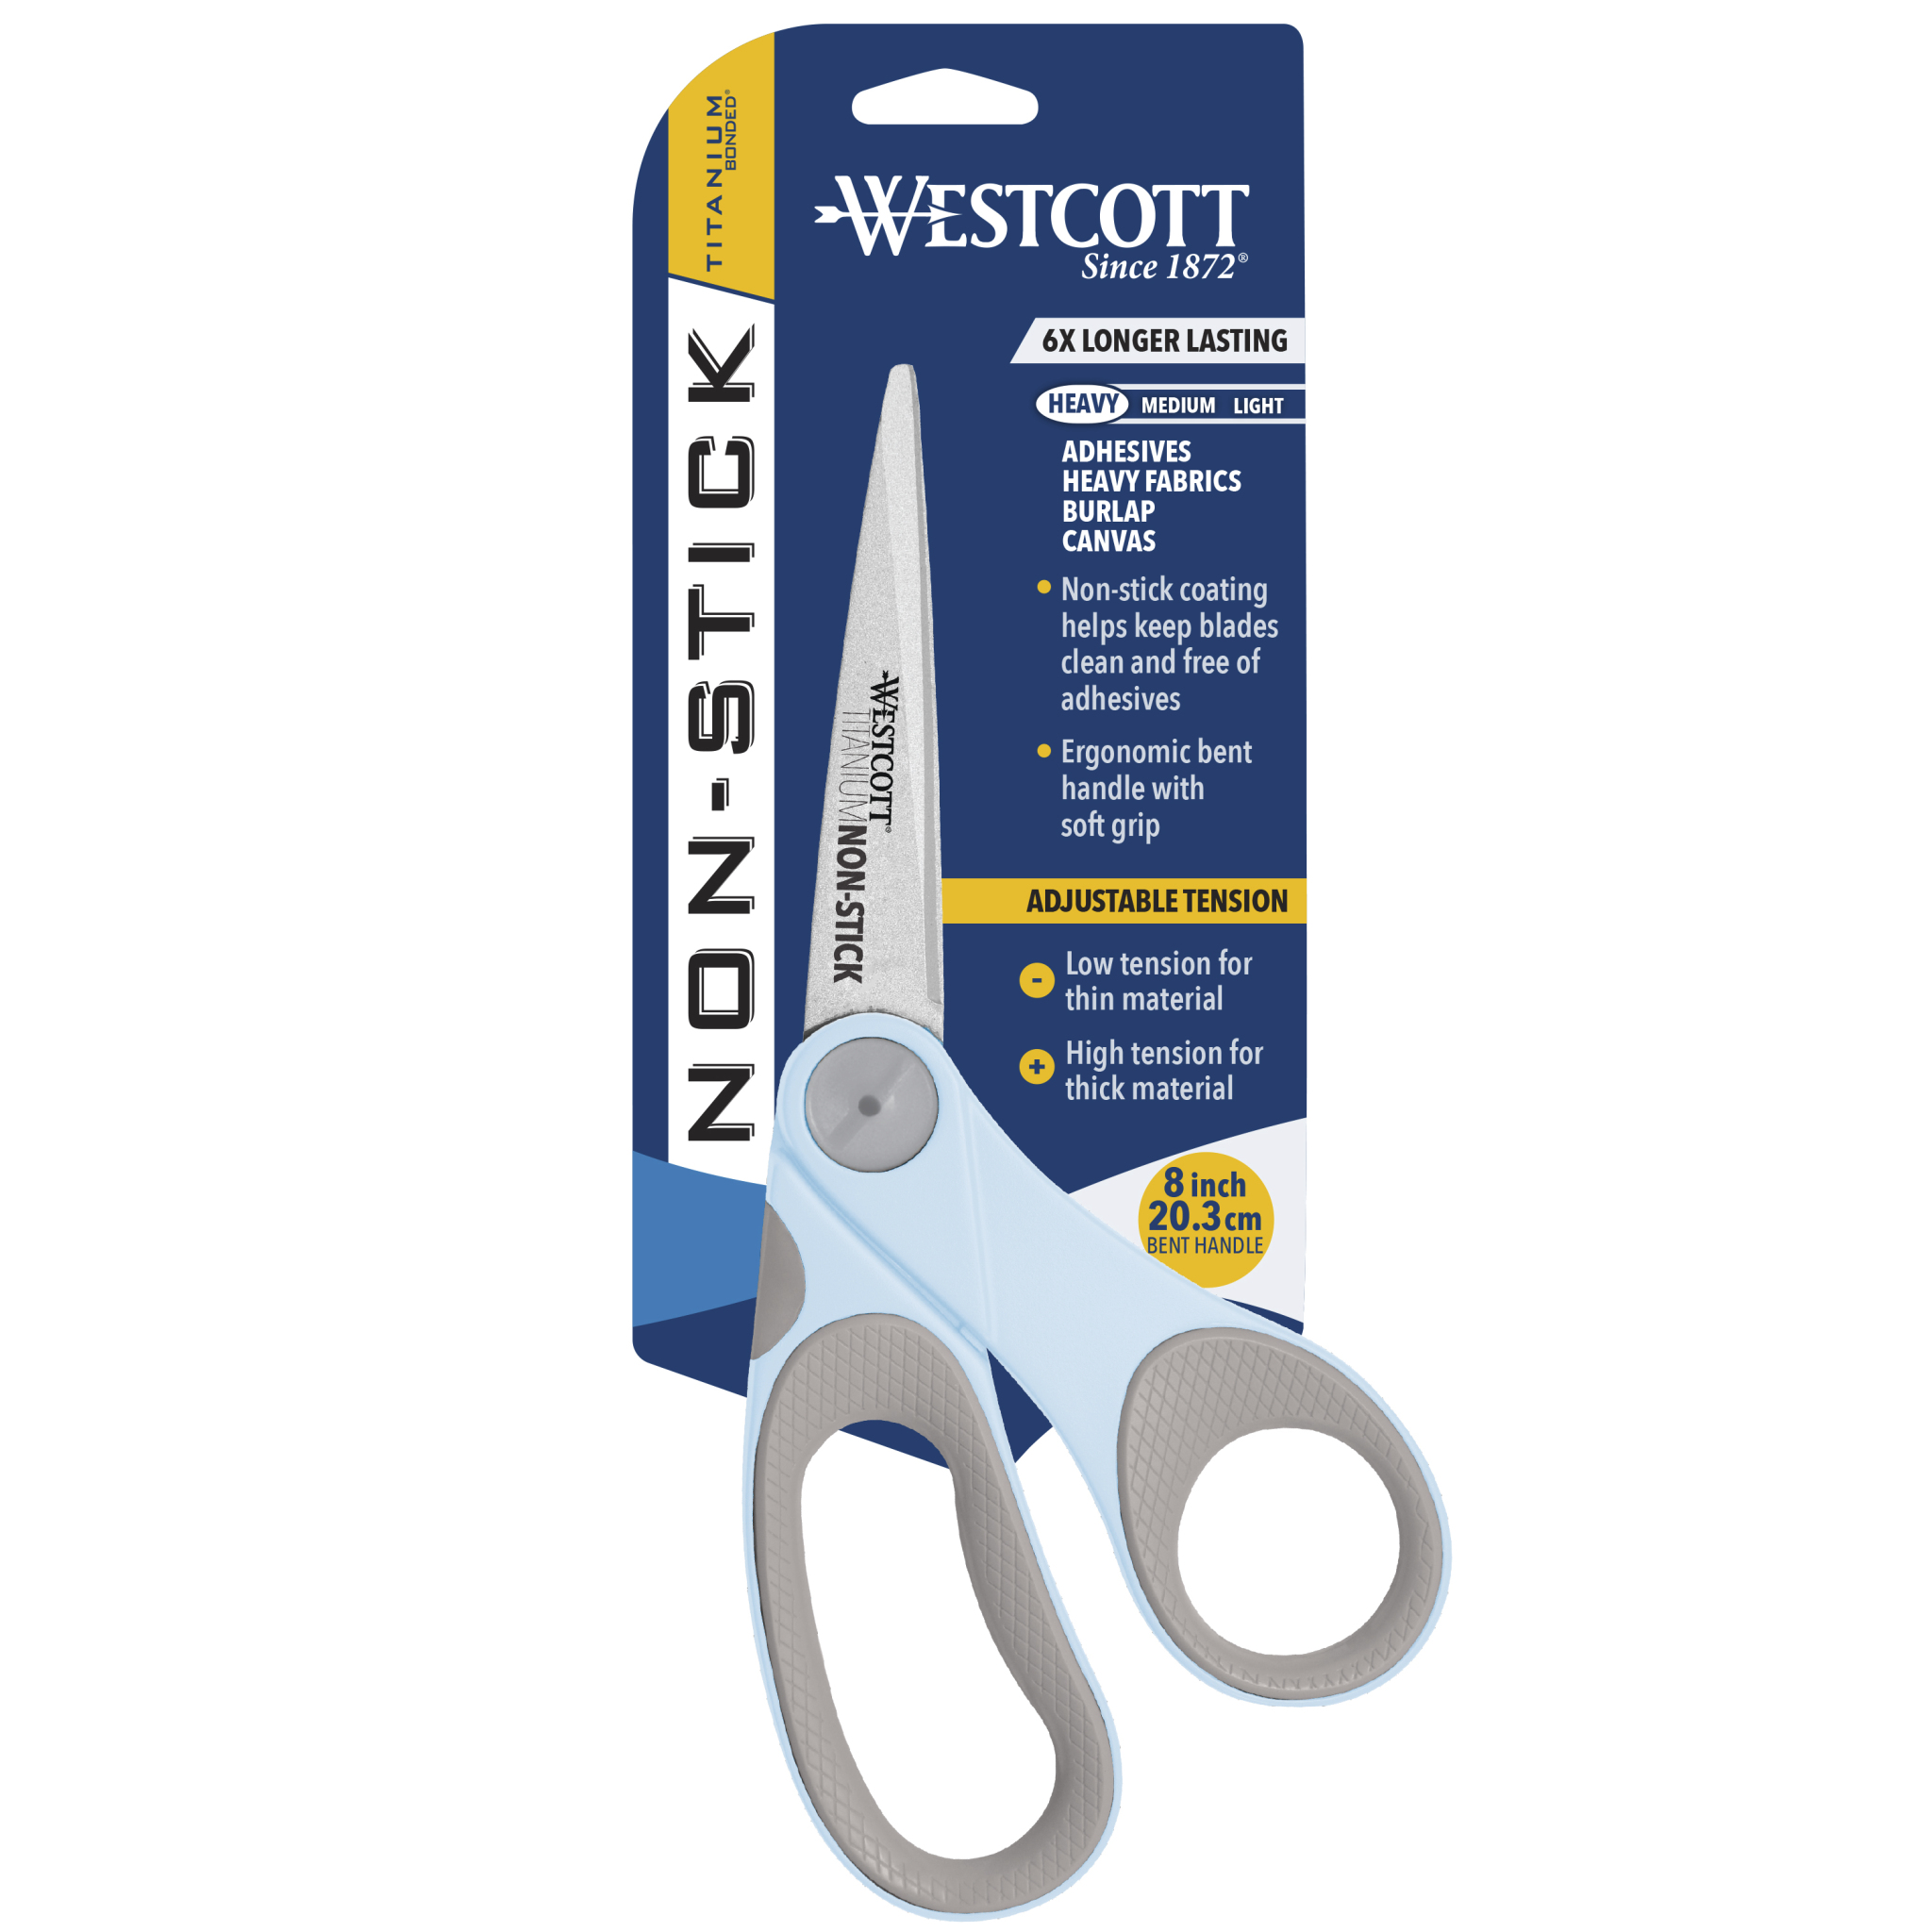 Westcott Titanium Non Stick 8 inch Bent Craft Scissors